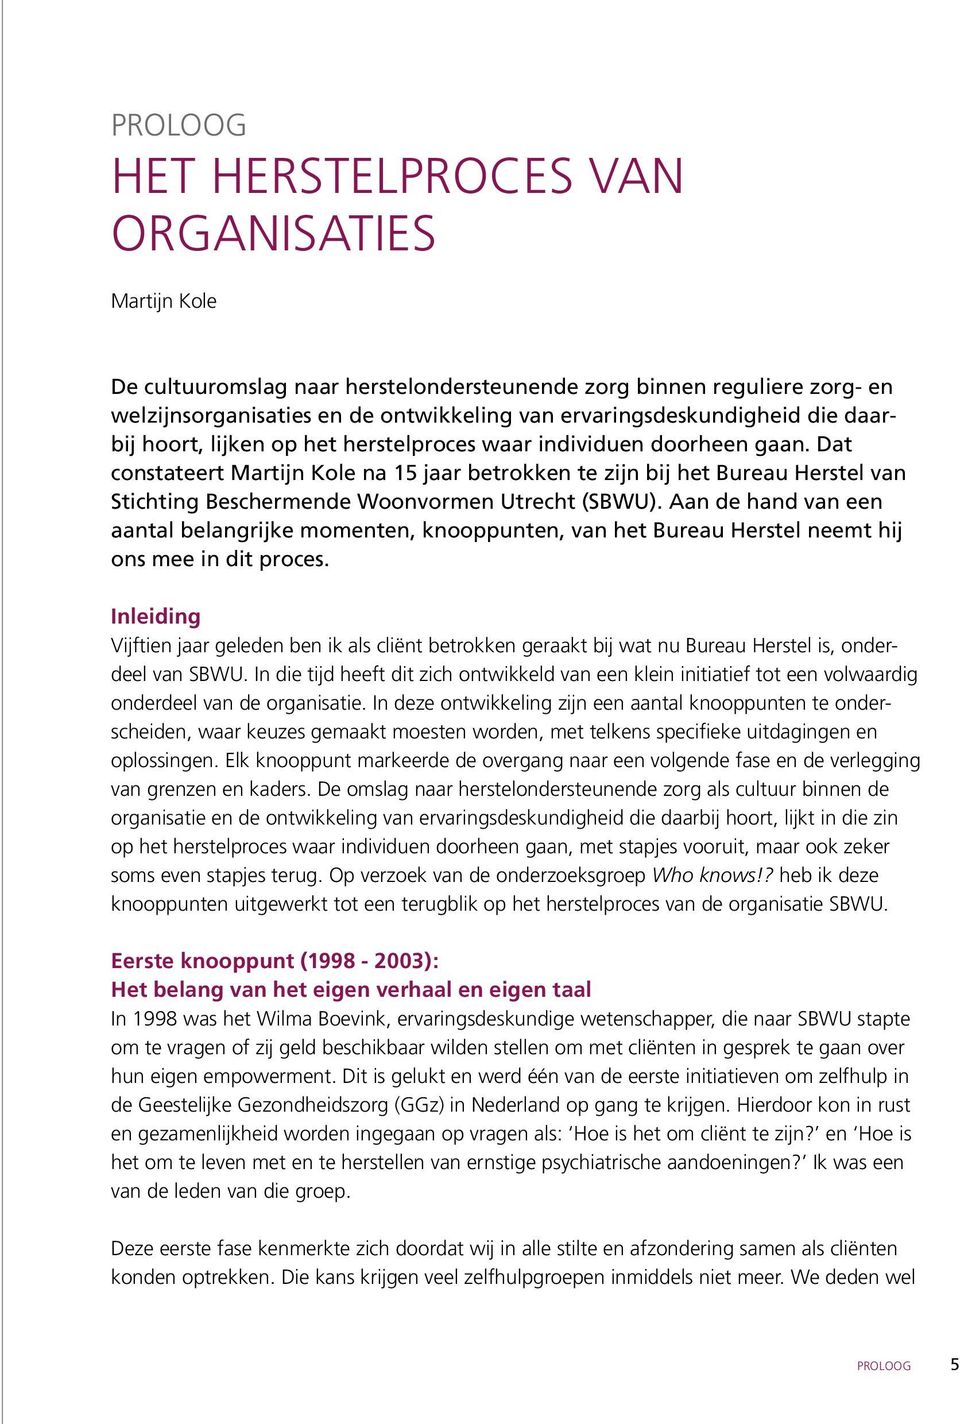 Dat constateert Martijn Kole na 15 jaar betrokken te zijn bij het Bureau Herstel van Stichting Beschermende Woonvormen Utrecht (SBWU).